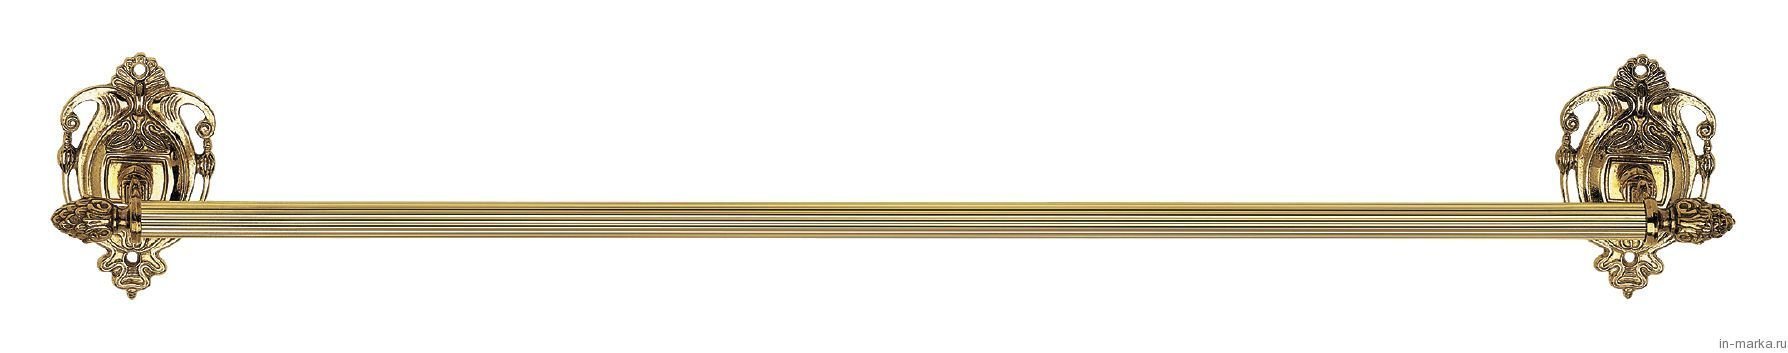 Полотенцедержатель 40см Impero AM-1226-Do-Ant античное золото - фото 1